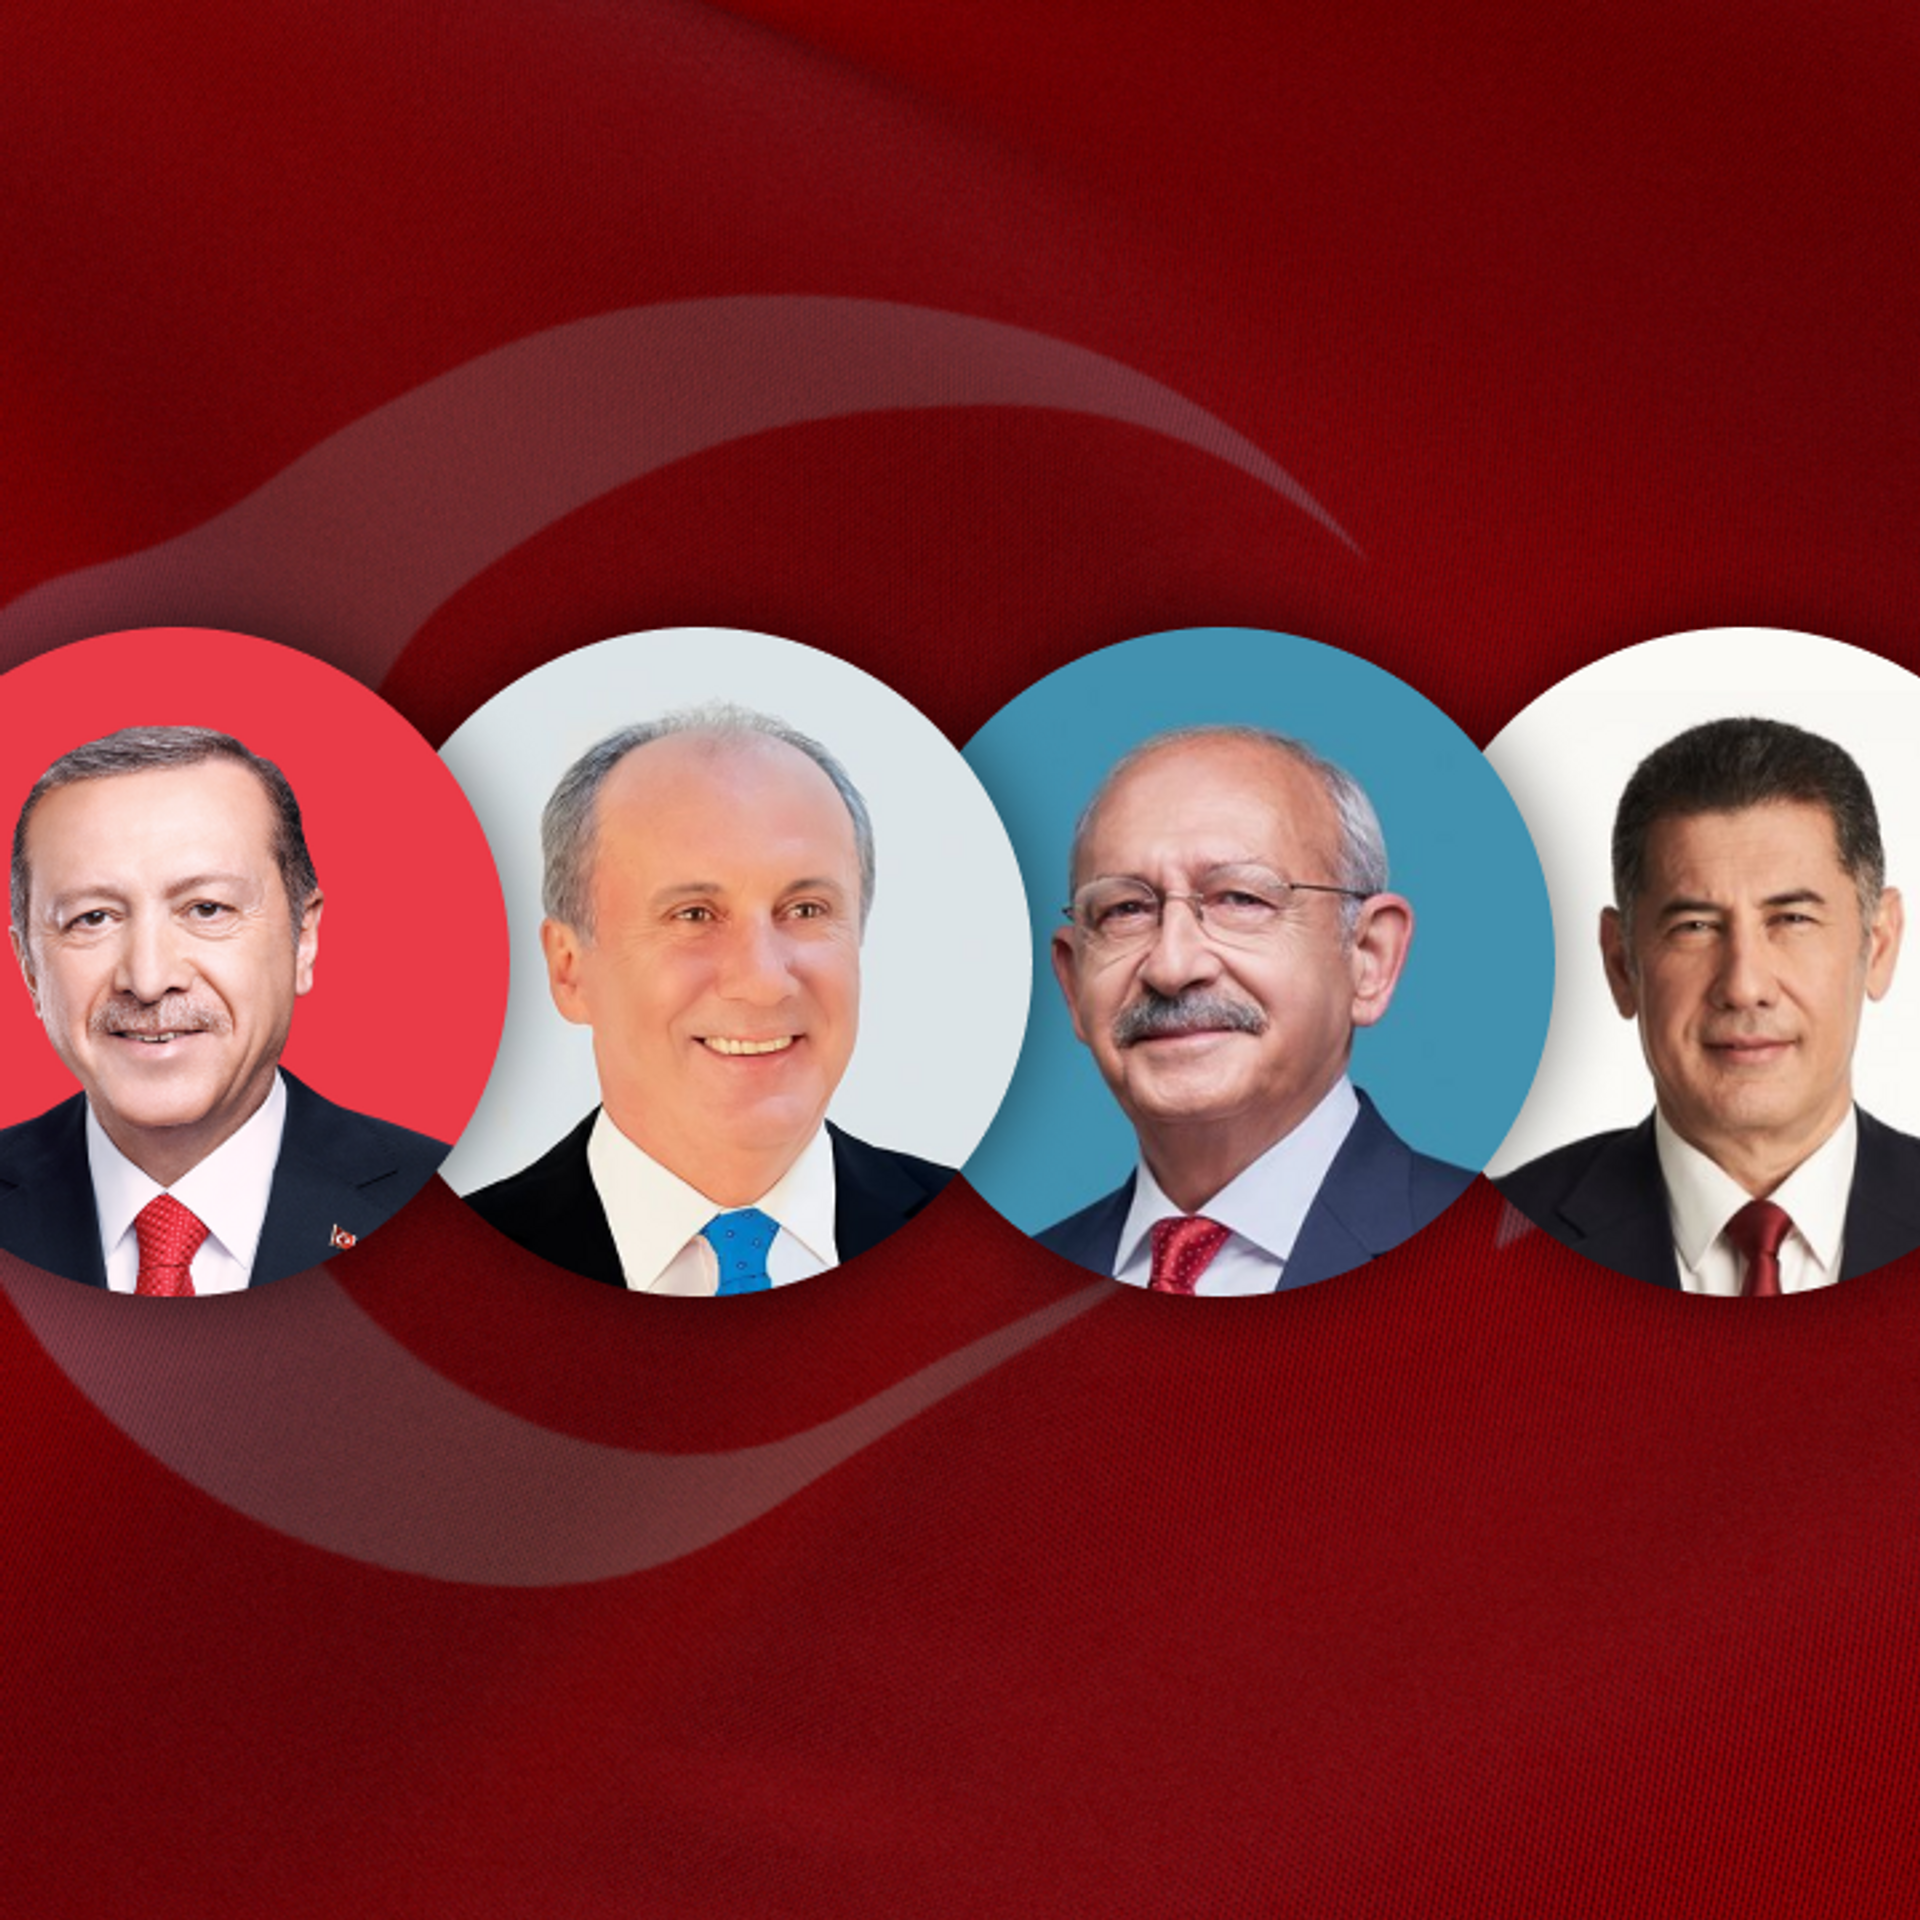 نتائج انتخابات تركيا 2023 في الخارج